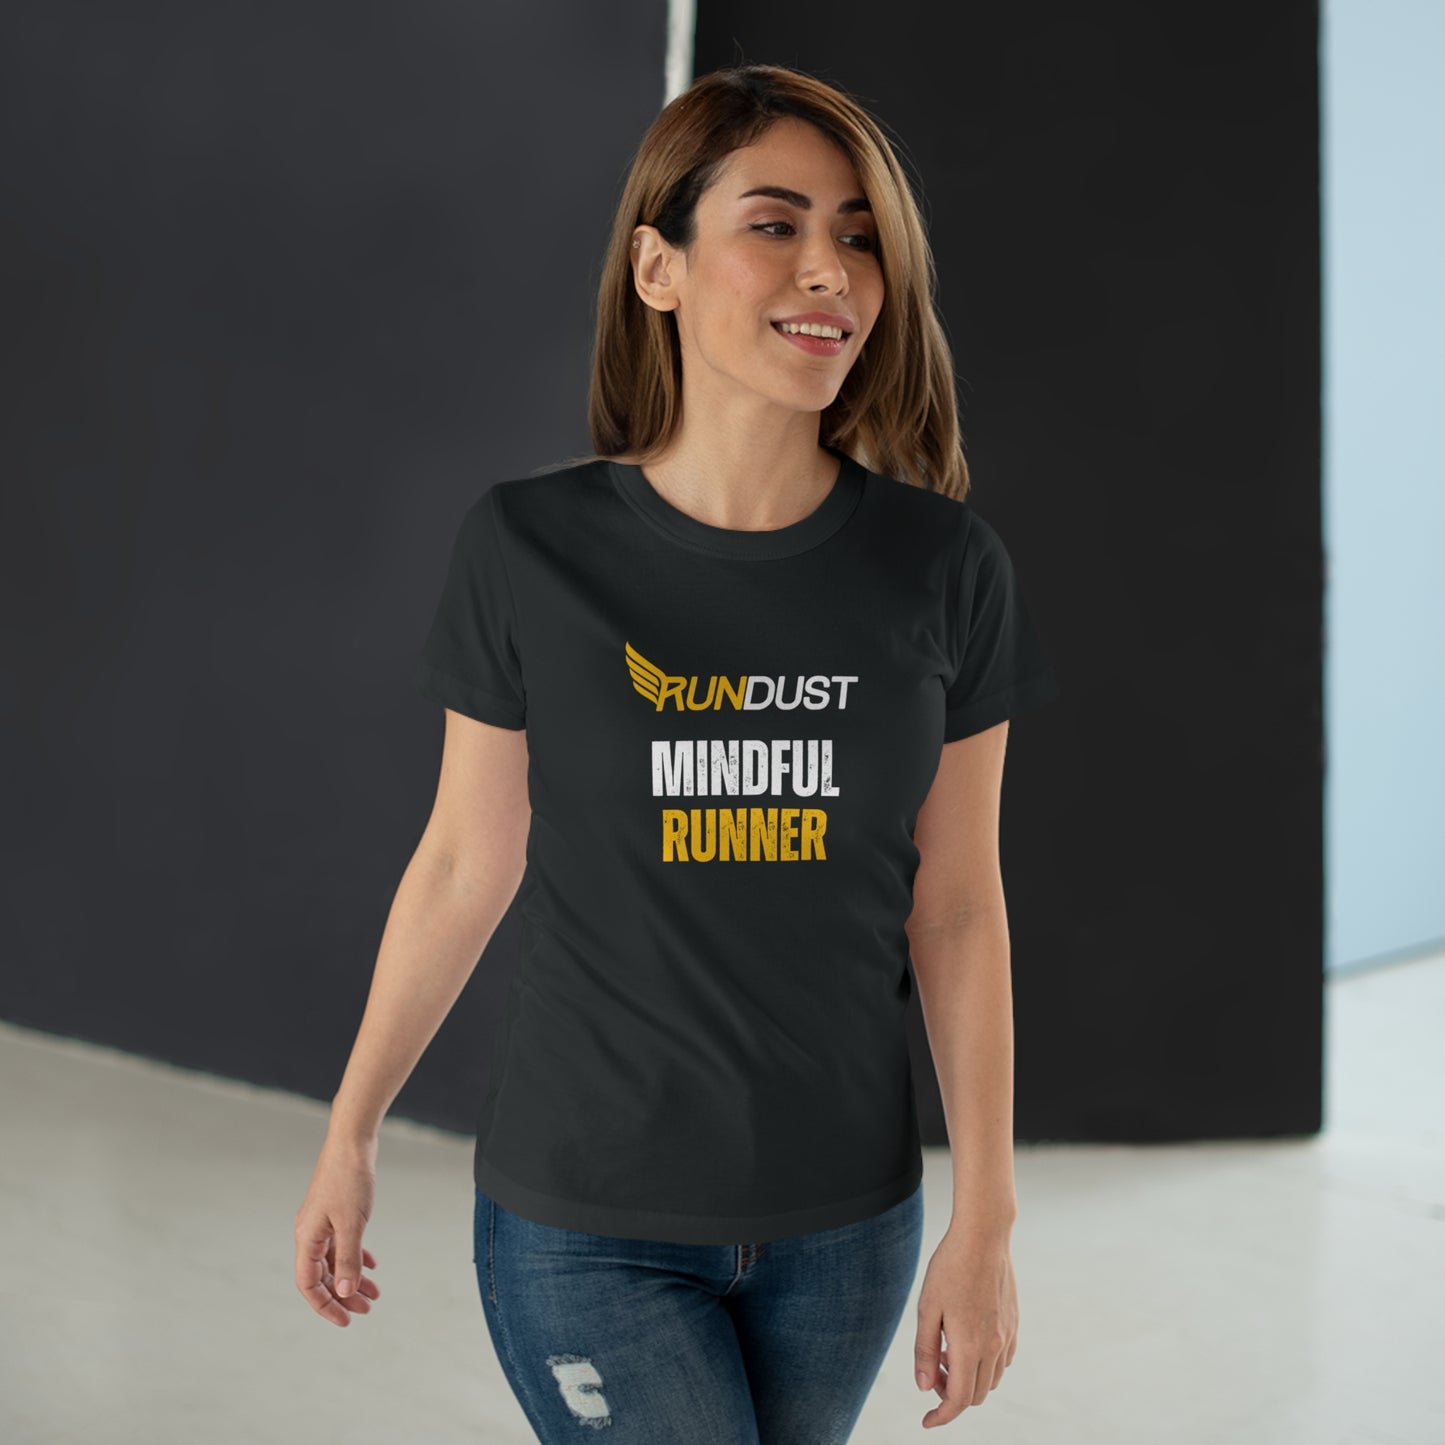 Rundust Mindful Runner Jersey Women's T-shirt